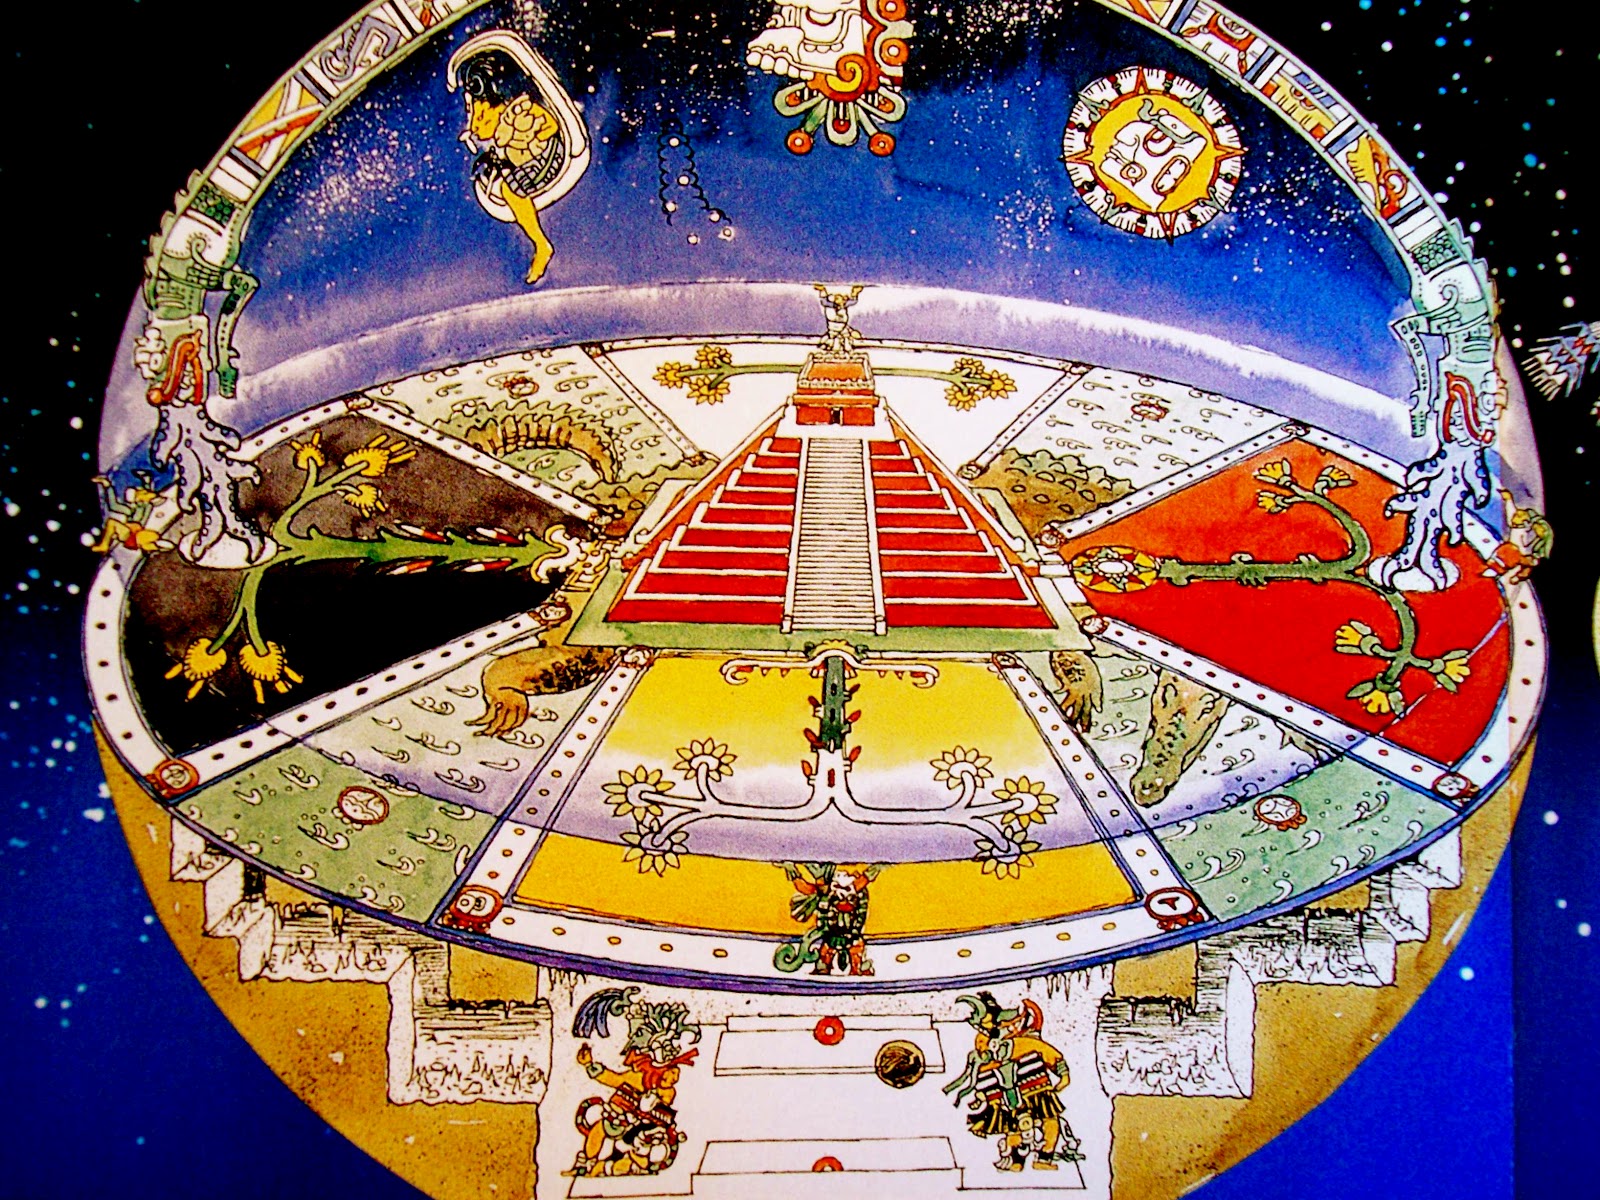 La cosmovisión azteca: el papel del hombre en el universo